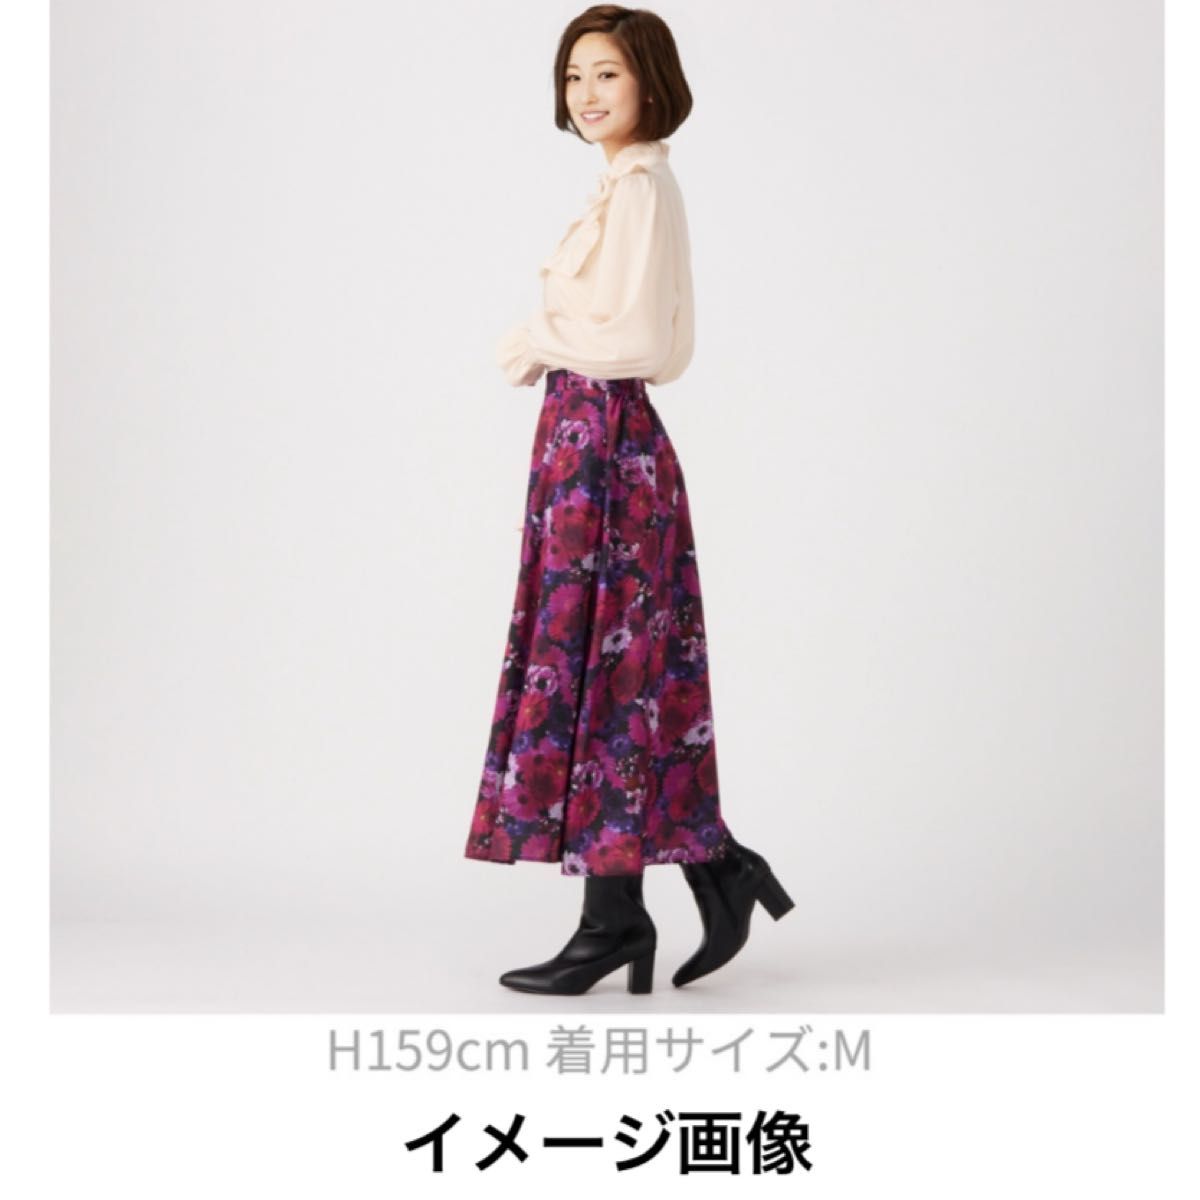 【新品未使用】＆Love （アンドラブ）デジタルアートフラワーの大人ドレープスカート パープル系 Sサイズ